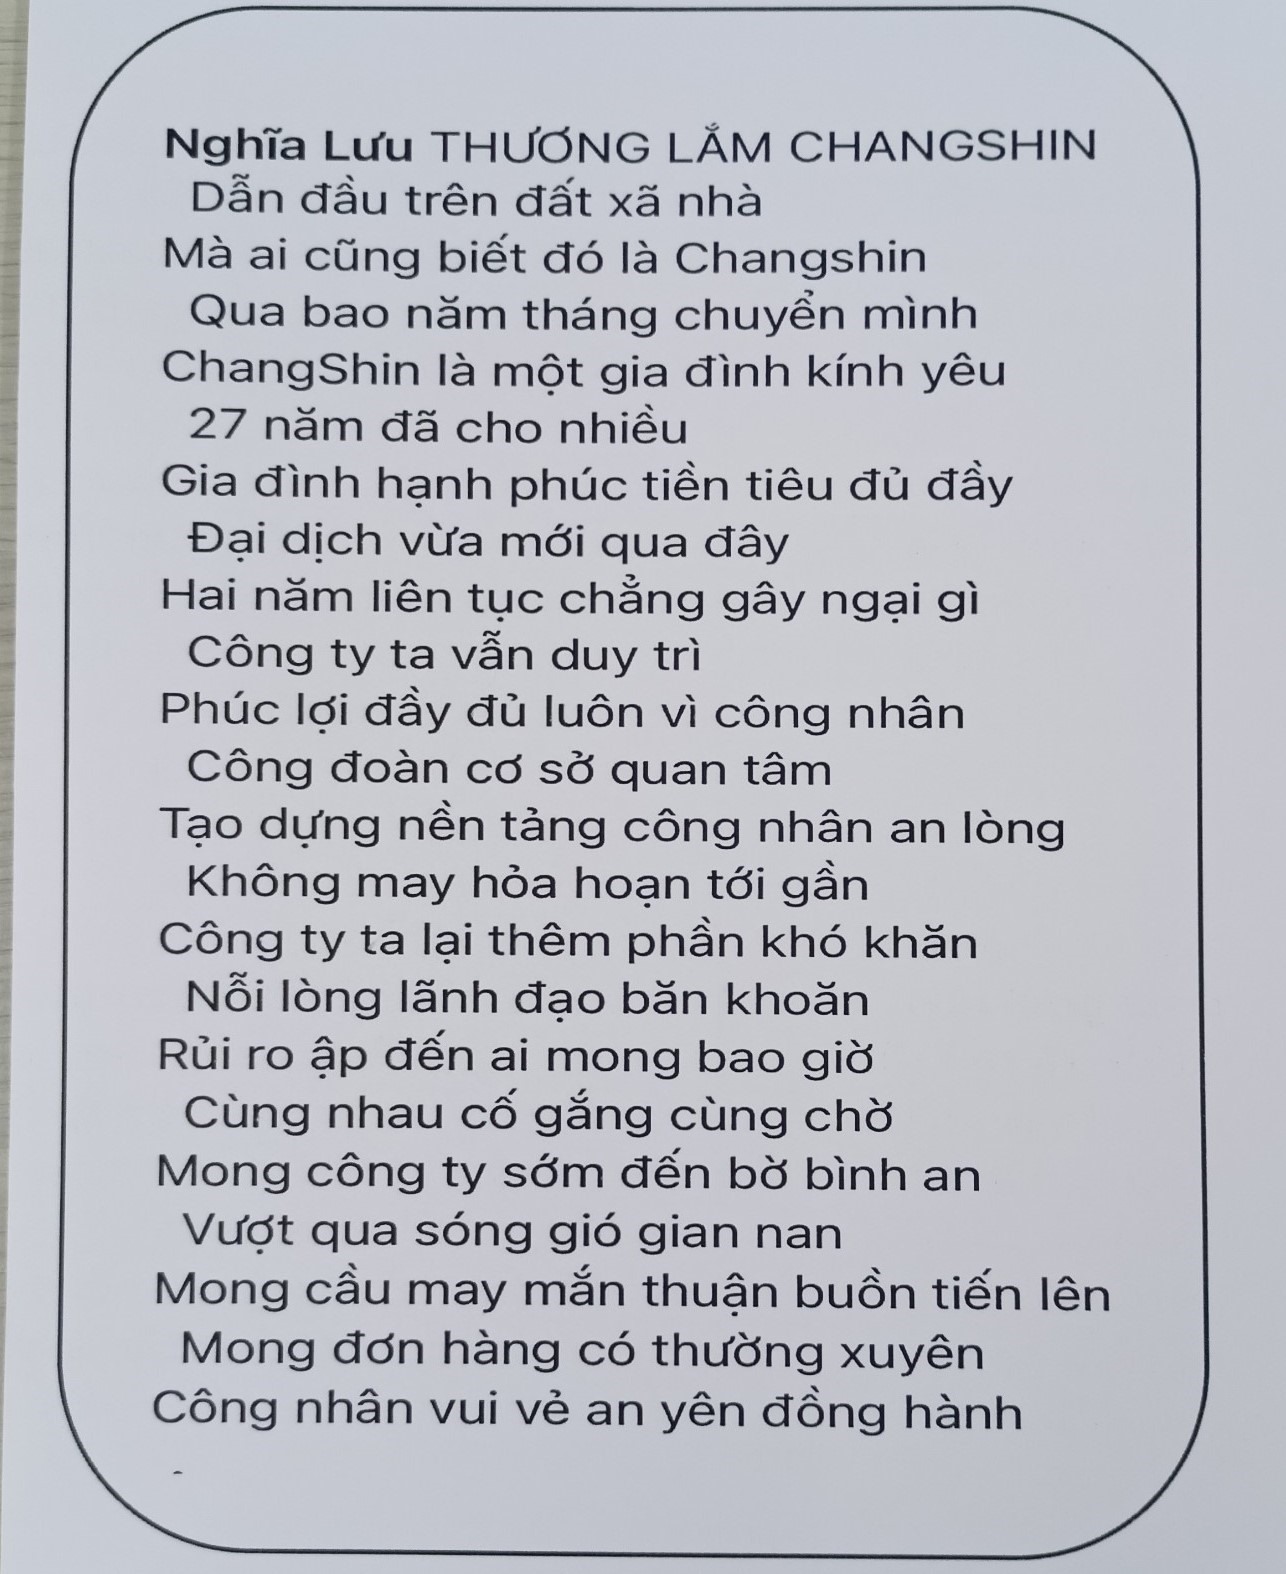 Bài thơ của công nhân Lưu Thị Nghĩa. Ảnh: Đ.T.T